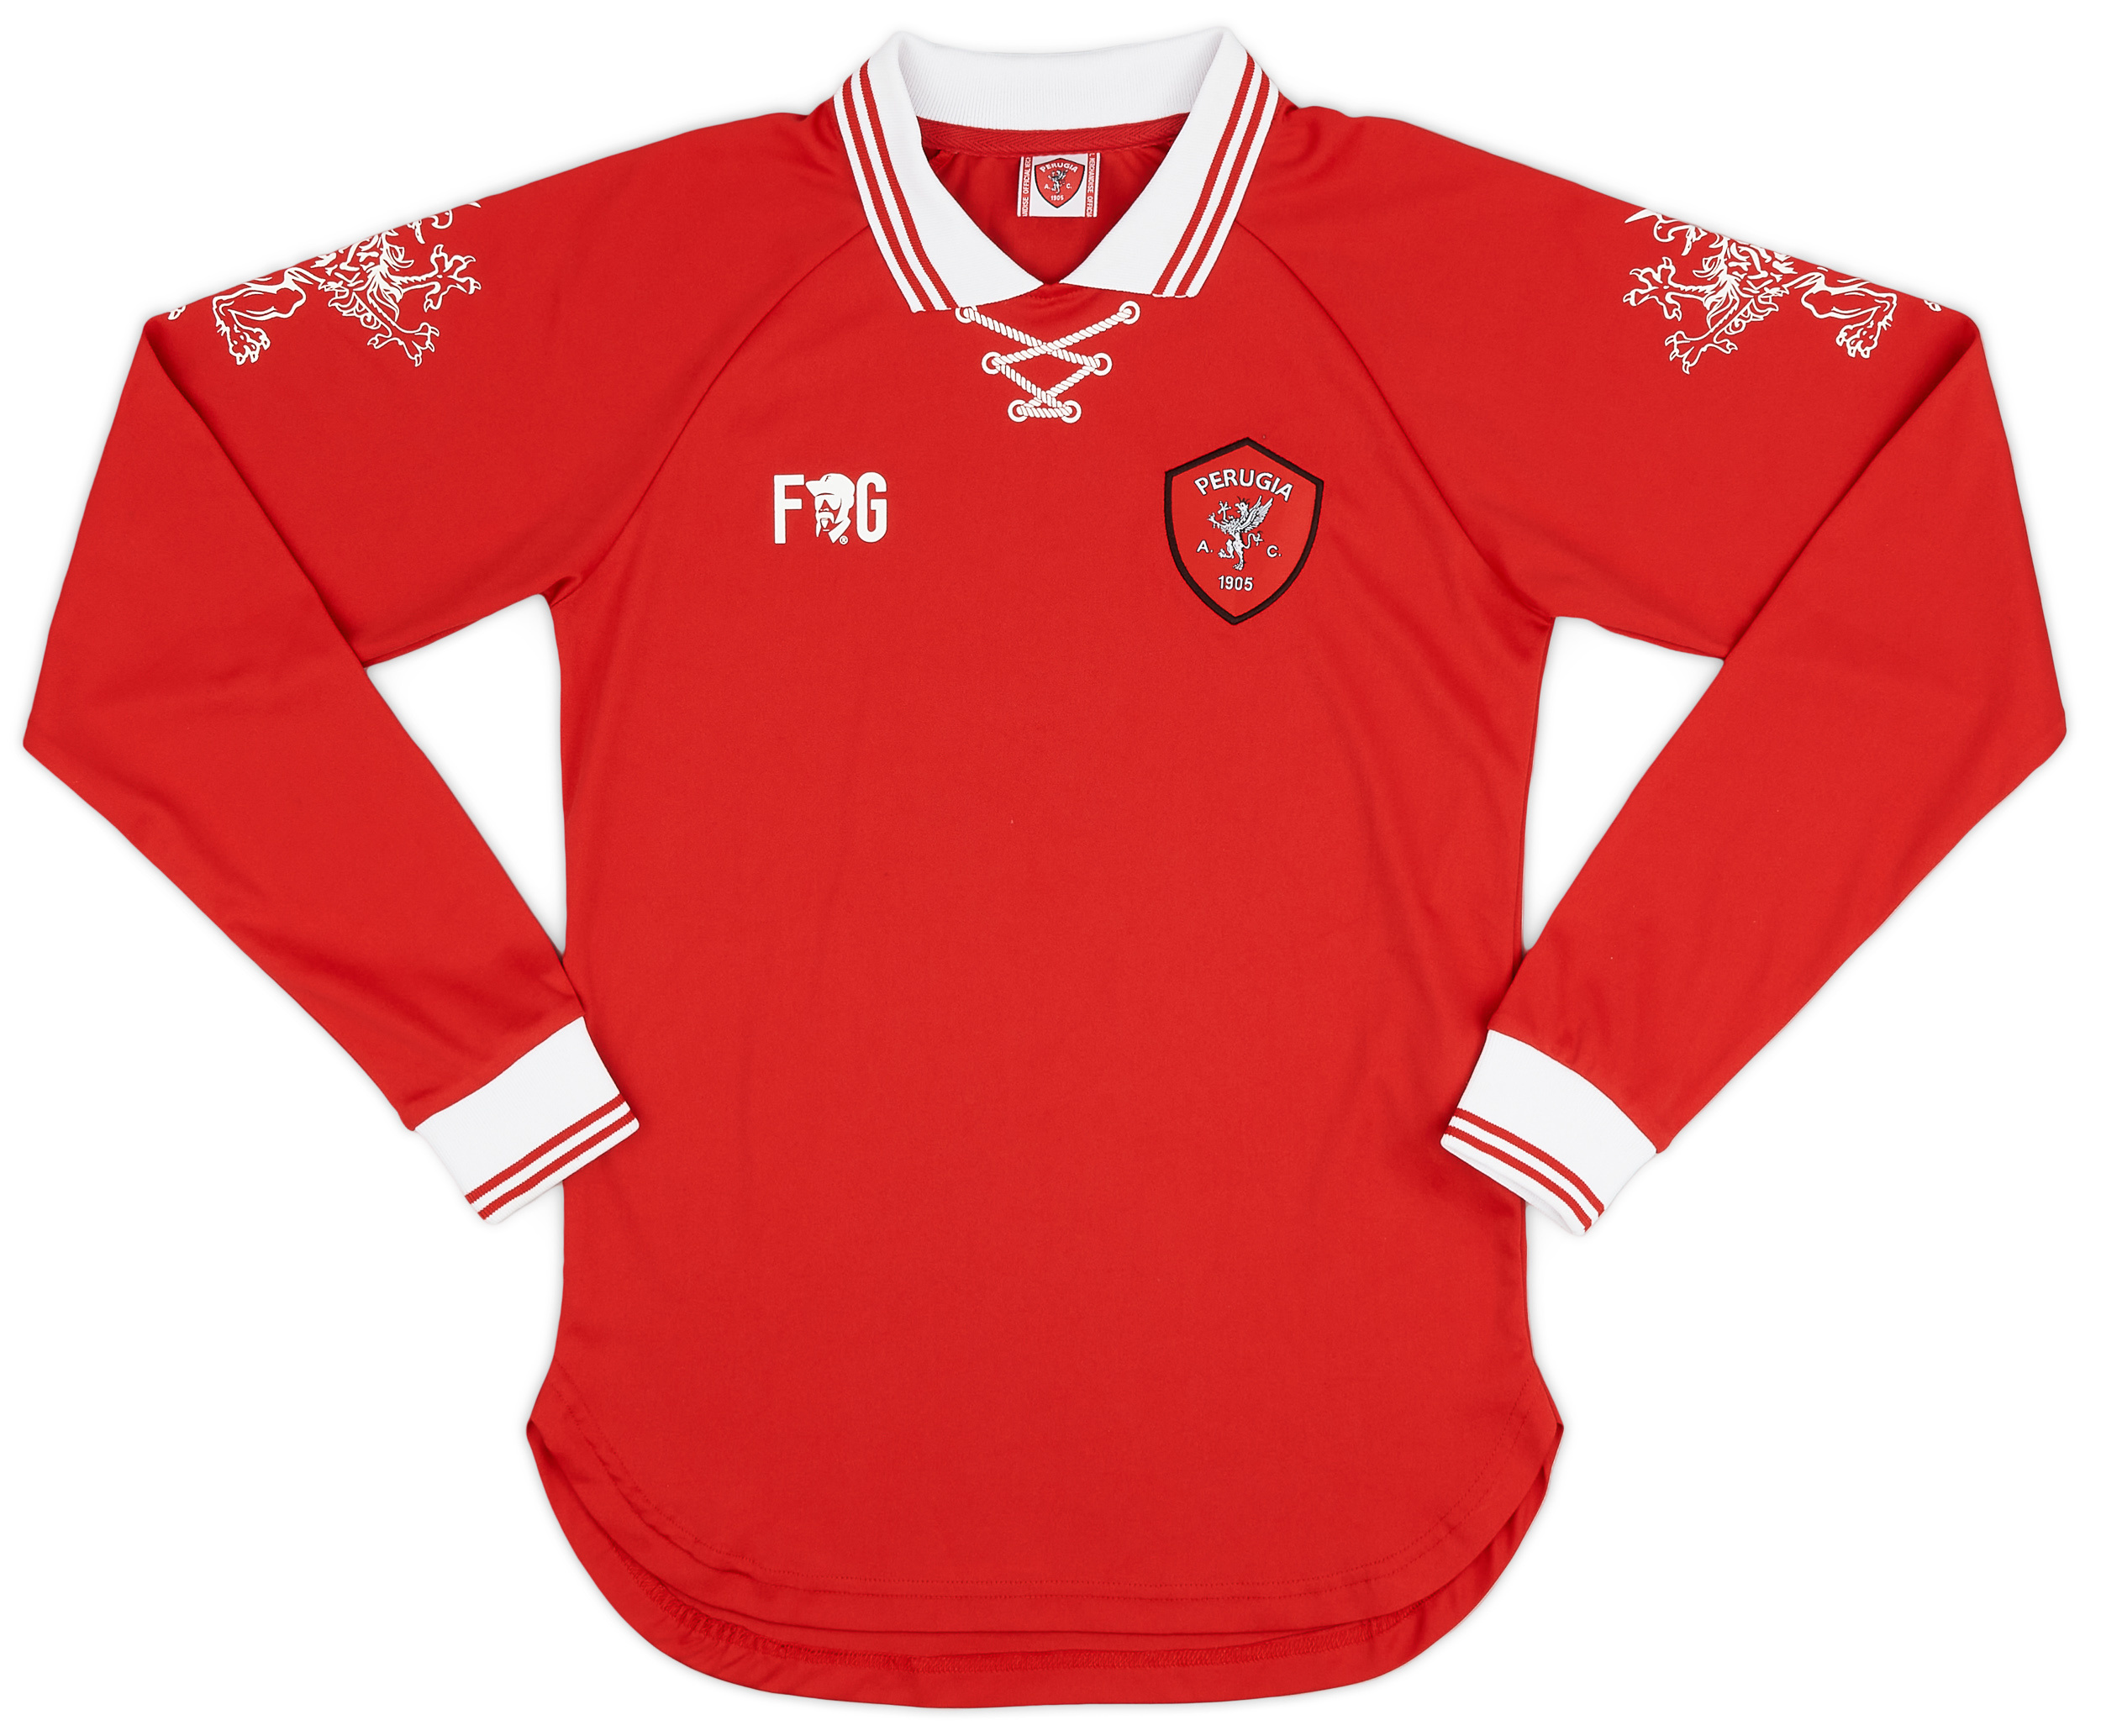 Perugia  home shirt  (Original)